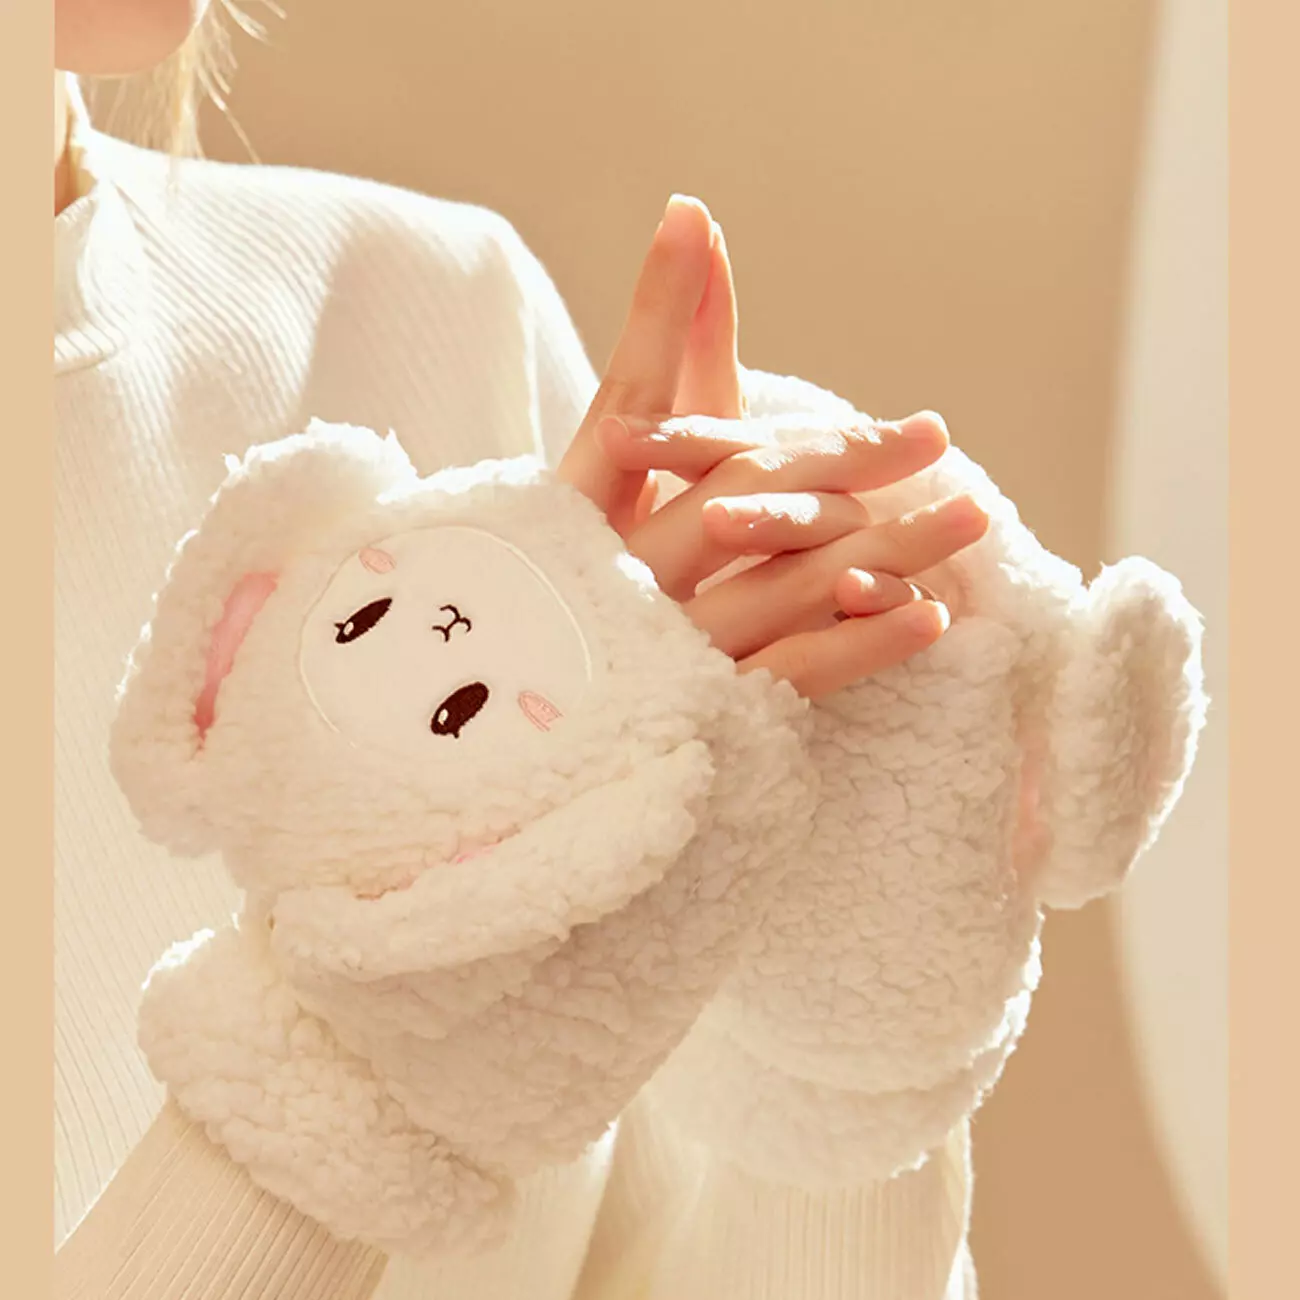 دستکش گرم کن فانتزی شارژی W09 Cute Pet Heating Gloves LLD-W09